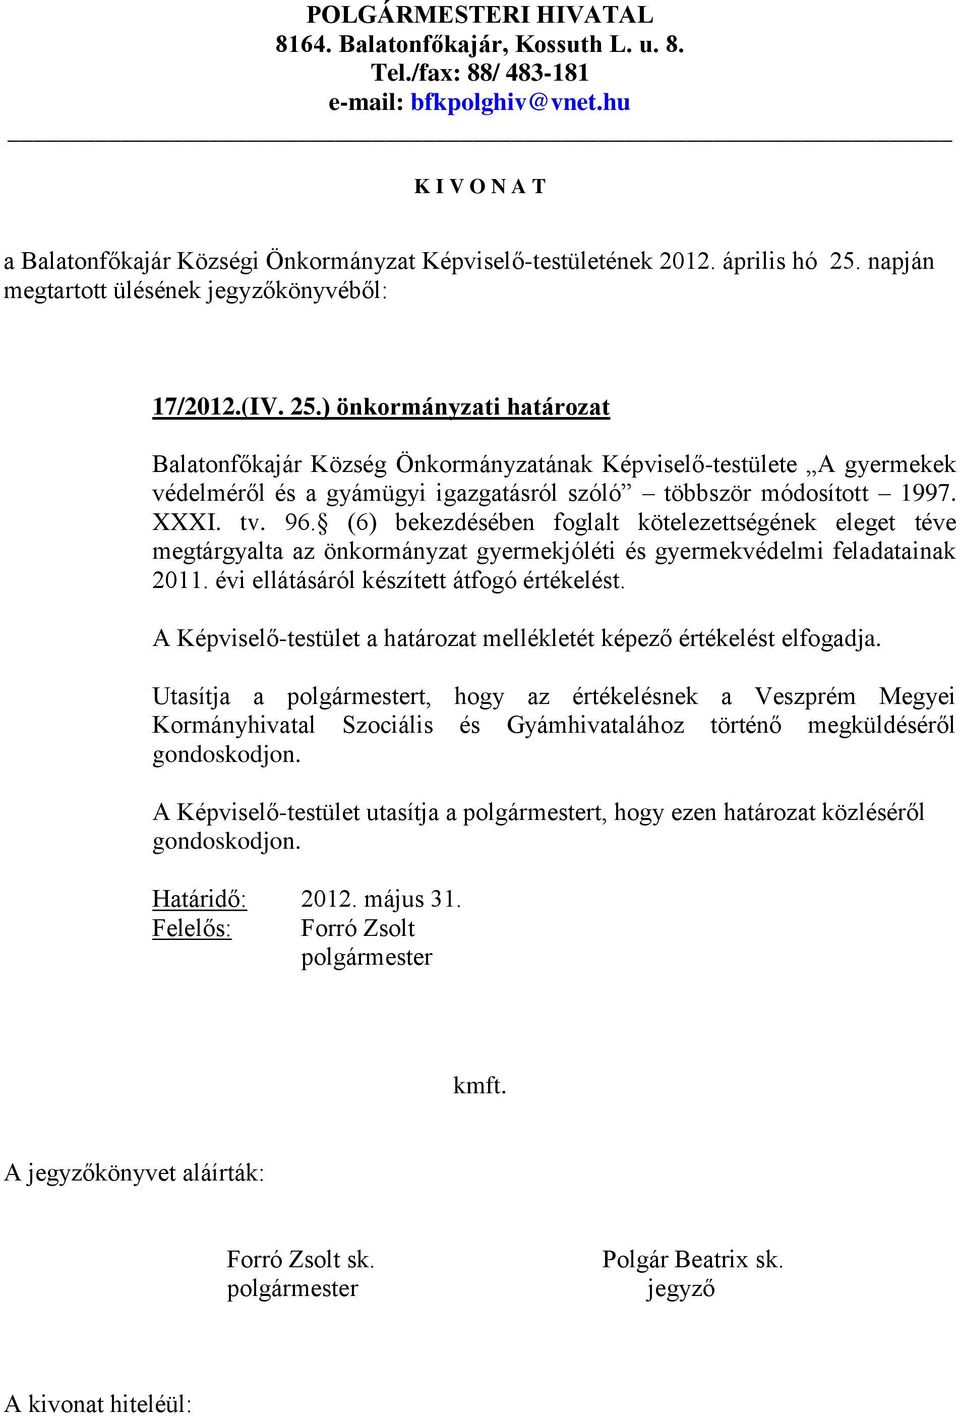 ) önkormányzati határozat Balatonfőkajár Község Önkormányzatának Képviselő-testülete A gyermekek védelméről és a gyámügyi igazgatásról szóló többször módosított 1997. XXXI. tv. 96.